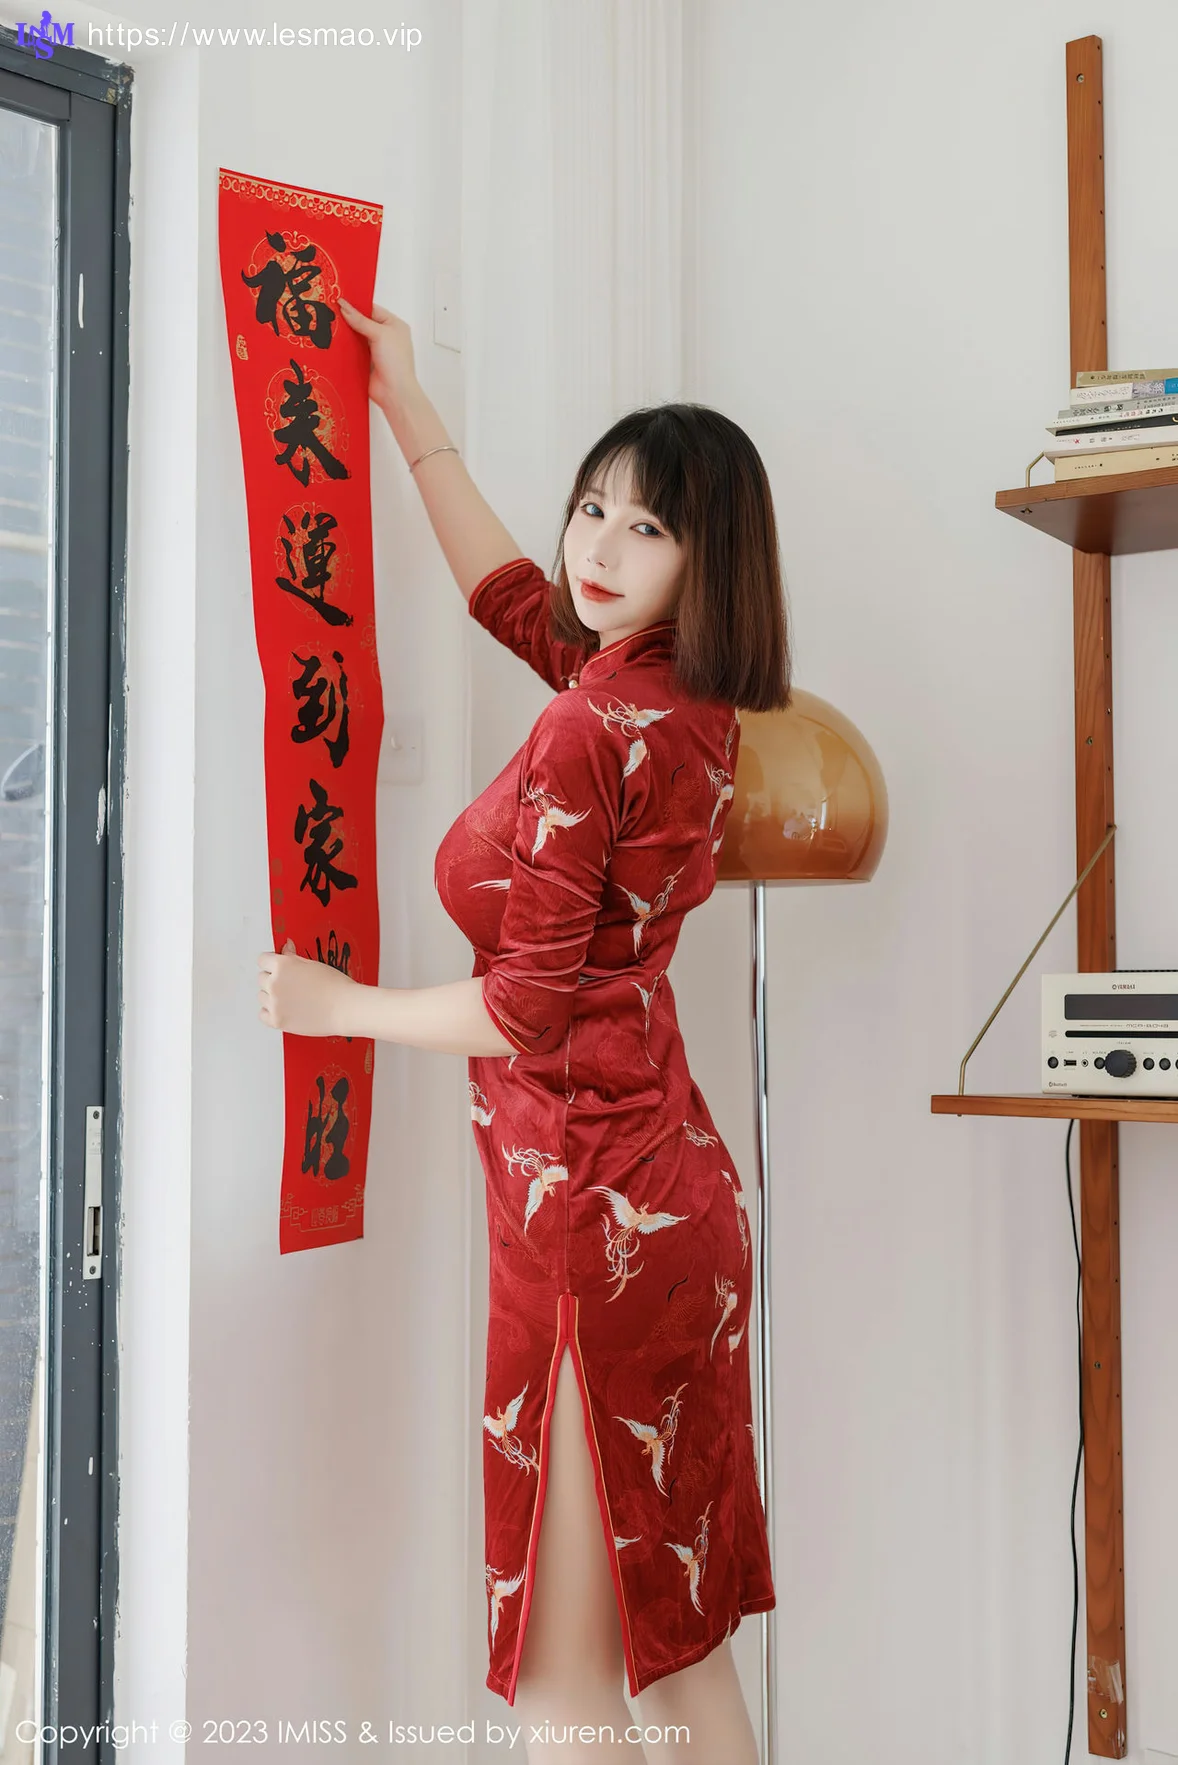 IMiss 爱蜜社 Vol.716 Evon陈赞之 红色旗袍最新性感写真 - 8